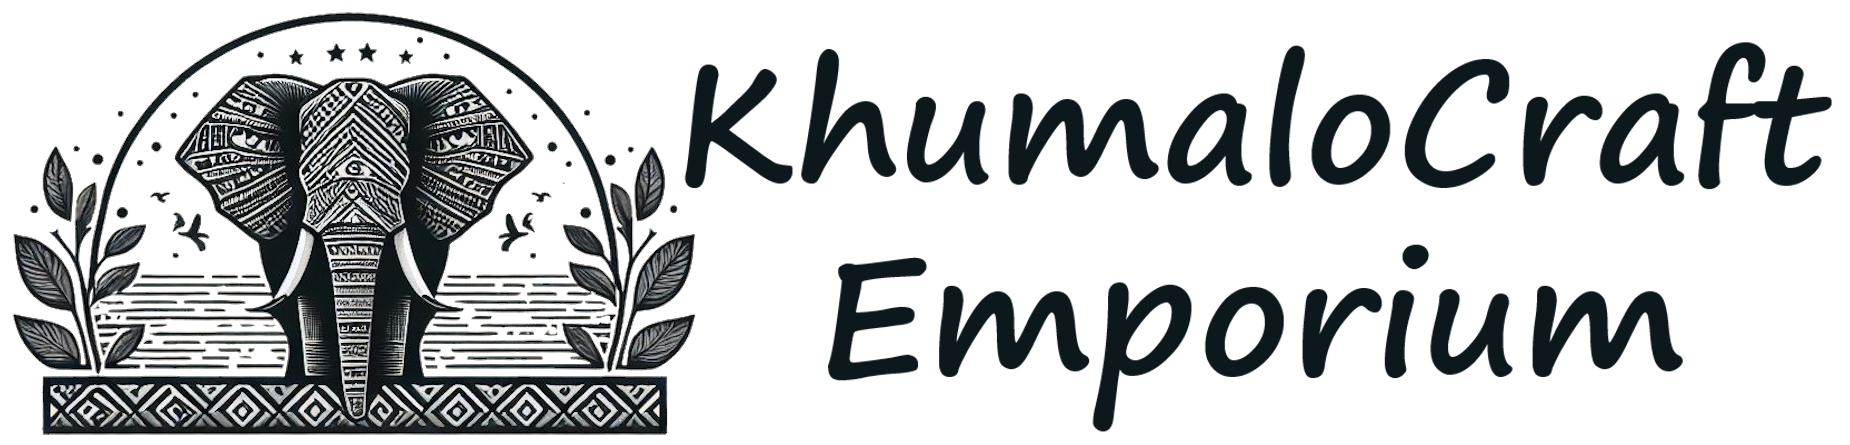 Logo of KhumaloCraft Emporium